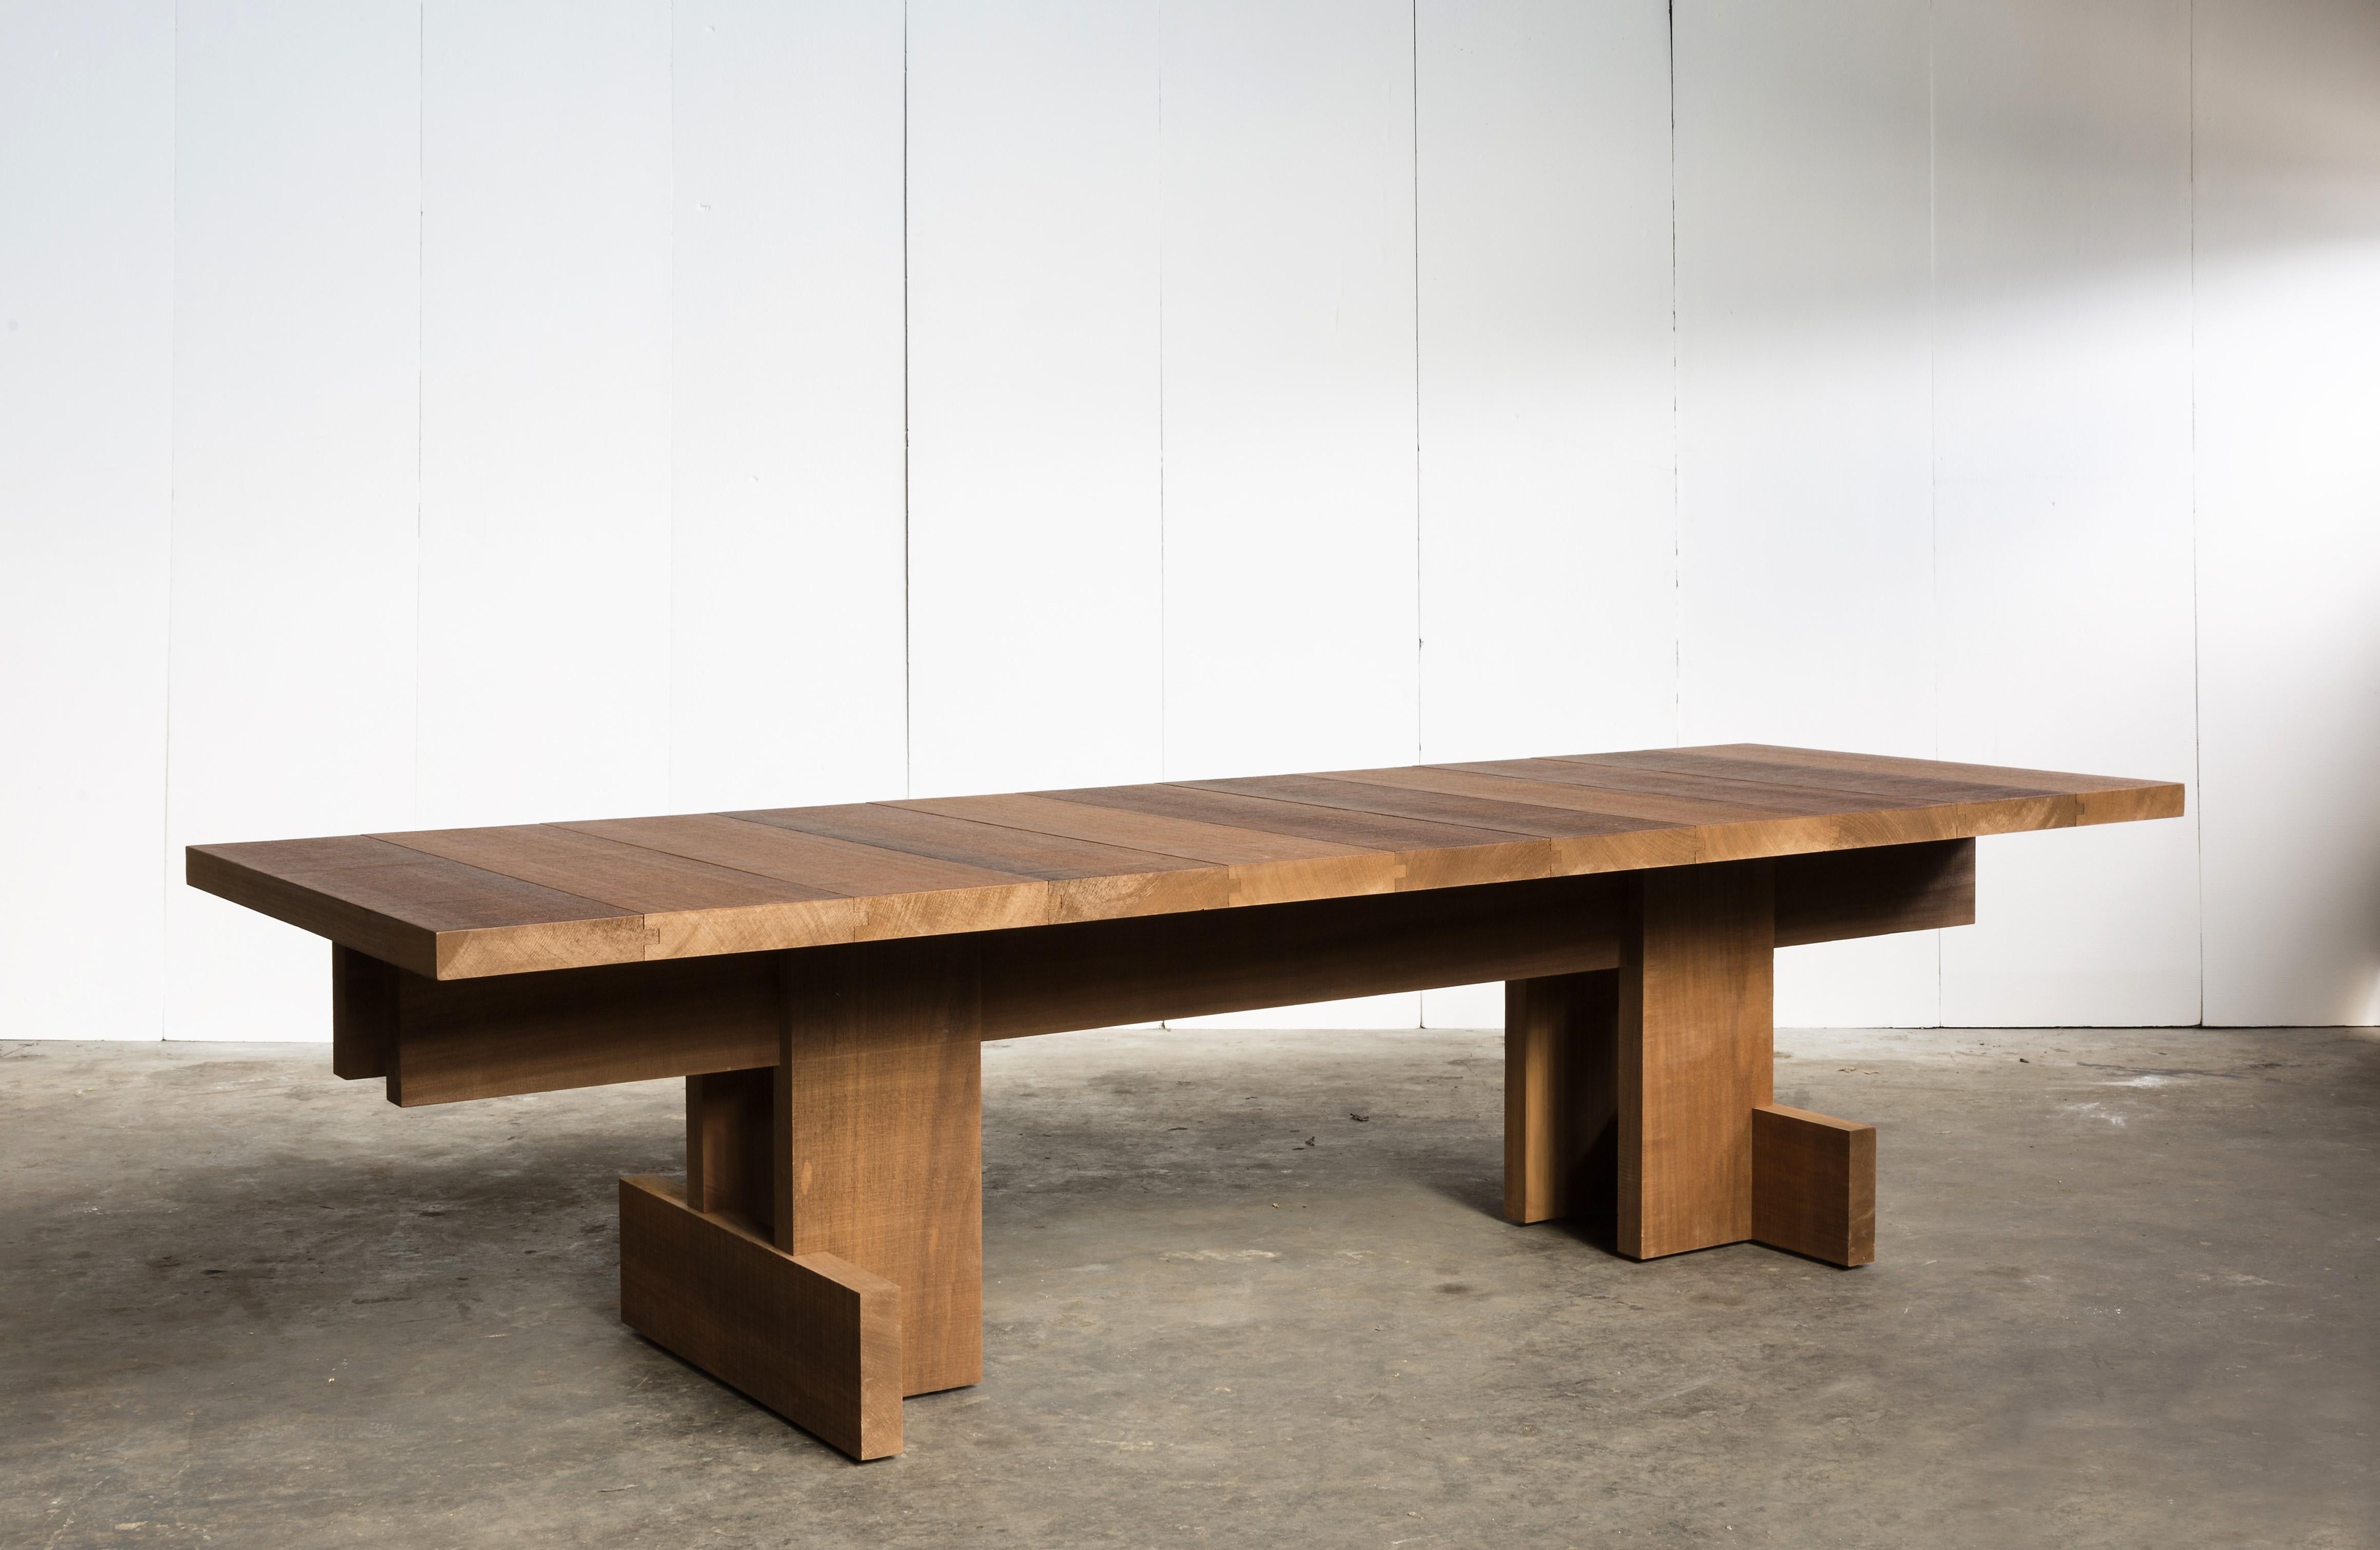 Fabriquée à la main en bois massif d'Ayous africain et finie à l'huile, la table peut être utilisée aussi bien à l'intérieur qu'à l'extérieur. La partie supérieure a une épaisseur d'environ 5,5 cm.
Table sur mesure - Nombreuses options de